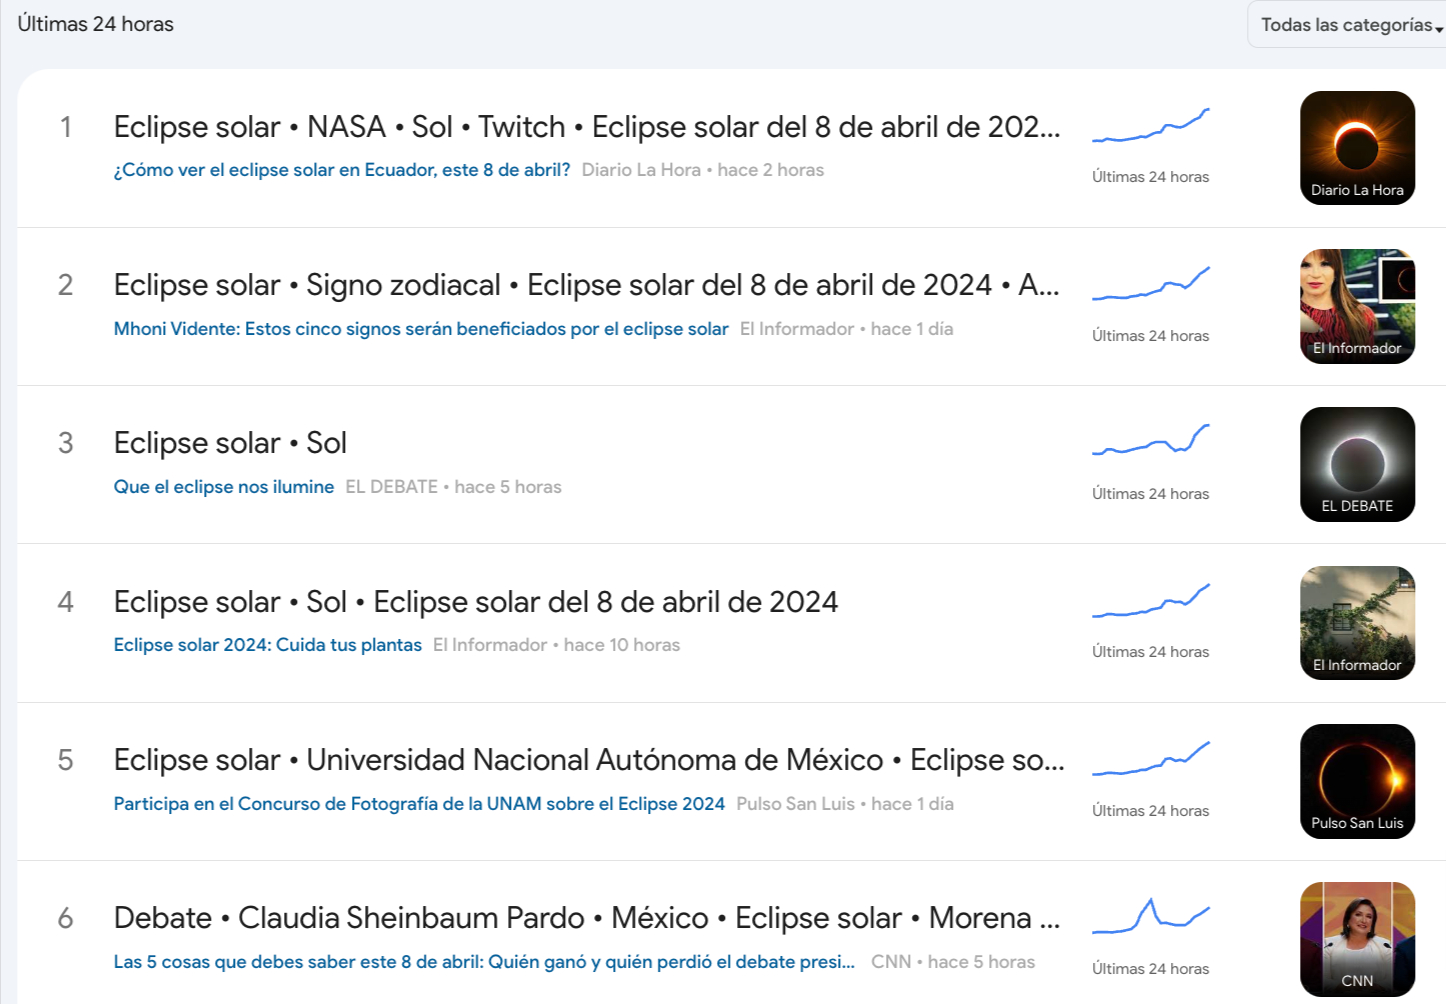 Las tendencias de búsqueda en Google en tiempo real reflejan un incremento exponencial en las búsquedas y el interés sobre este fenómeno astronómico, sobre lo ocurrido en el primer debate presidencial del INE.